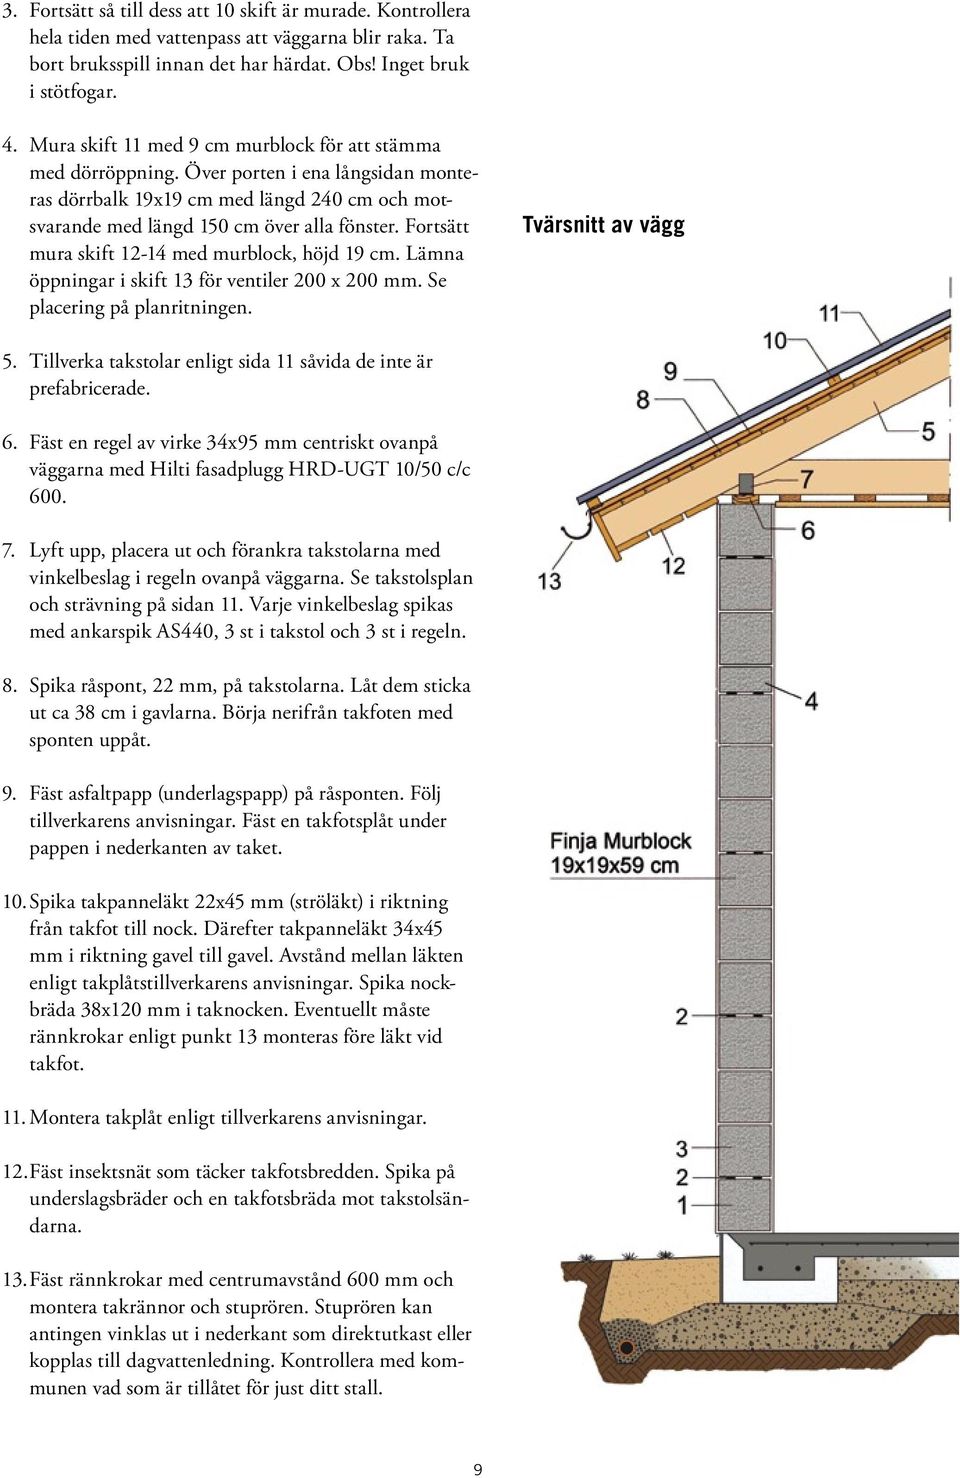 Fortsätt mura skift 12-14 med murblock, höjd 19 cm. Lämna öppningar i skift 13 för ventiler 200 x 200 mm. Se placering på planritningen. Tvärsnitt av vägg 5.